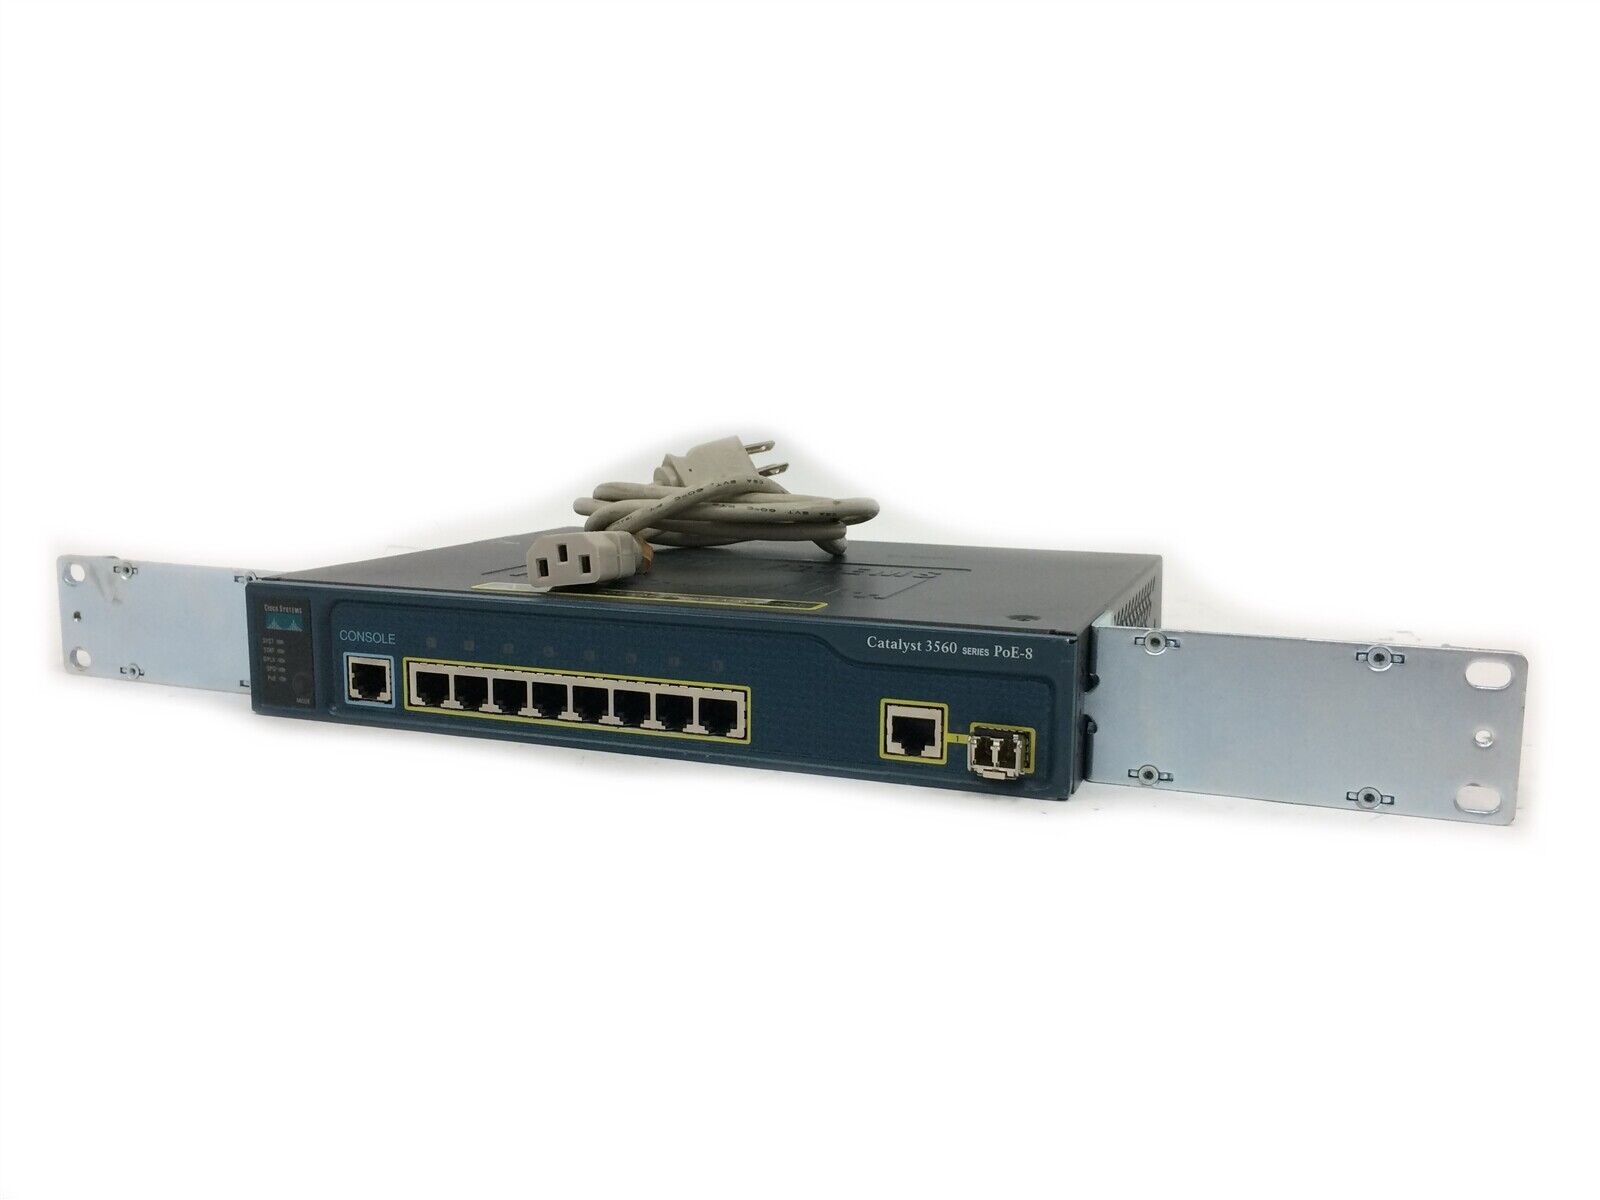 Cisco 3560 WS-C3560-8PC-S 8 Port PoE Gigabit Switch w/ GLC-SX-MM SFP & Rack Ears